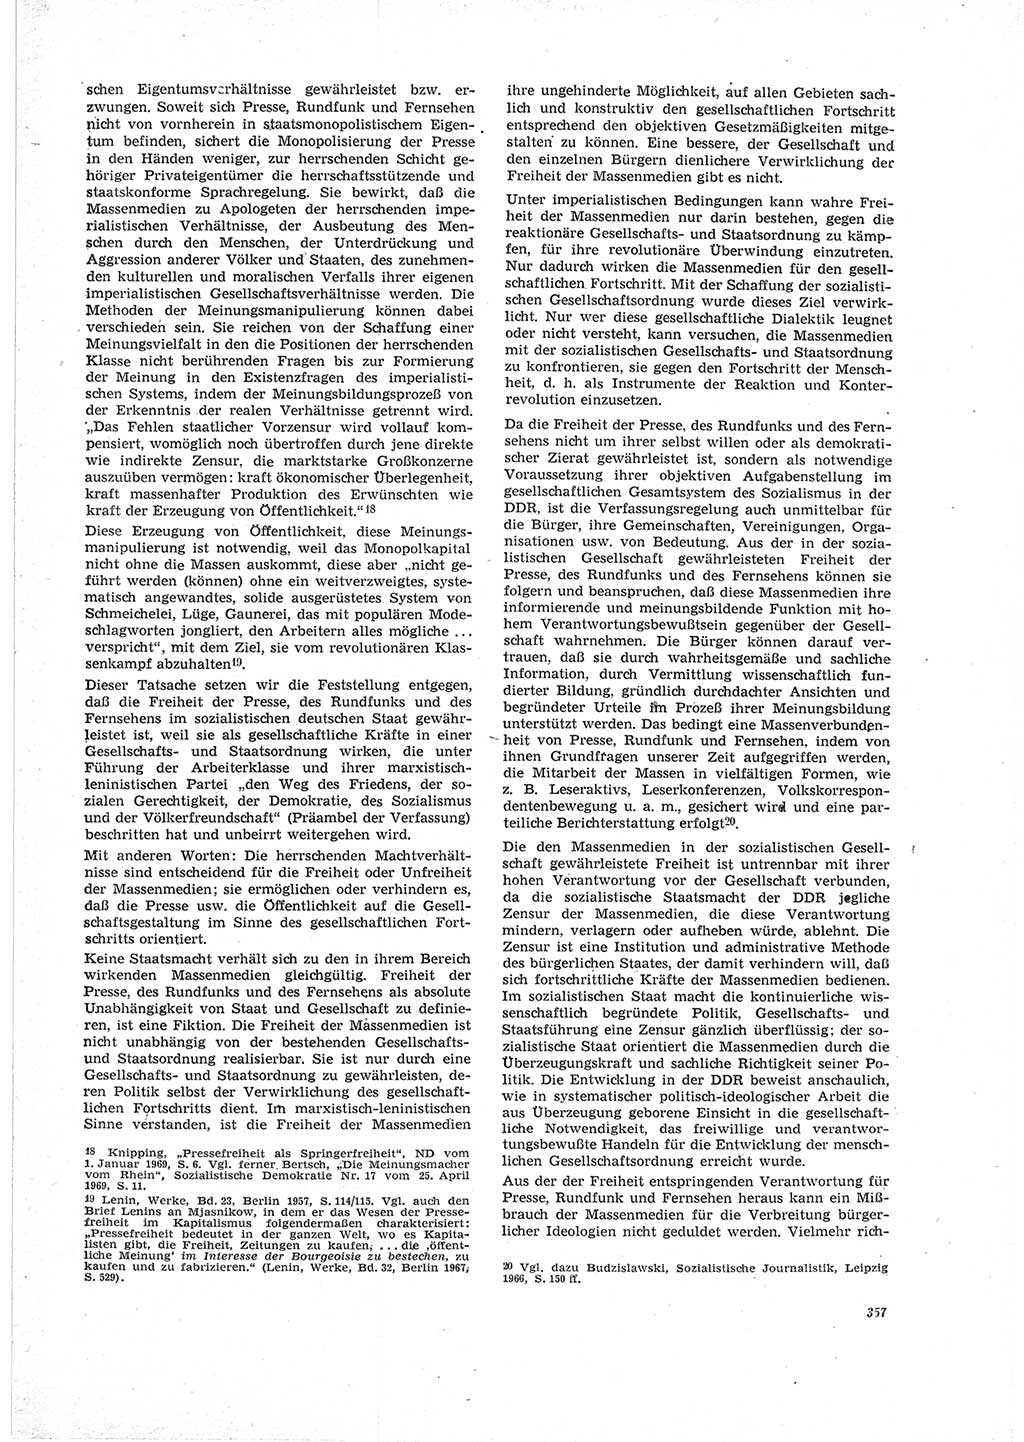 Neue Justiz (NJ), Zeitschrift für Recht und Rechtswissenschaft [Deutsche Demokratische Republik (DDR)], 23. Jahrgang 1969, Seite 357 (NJ DDR 1969, S. 357)